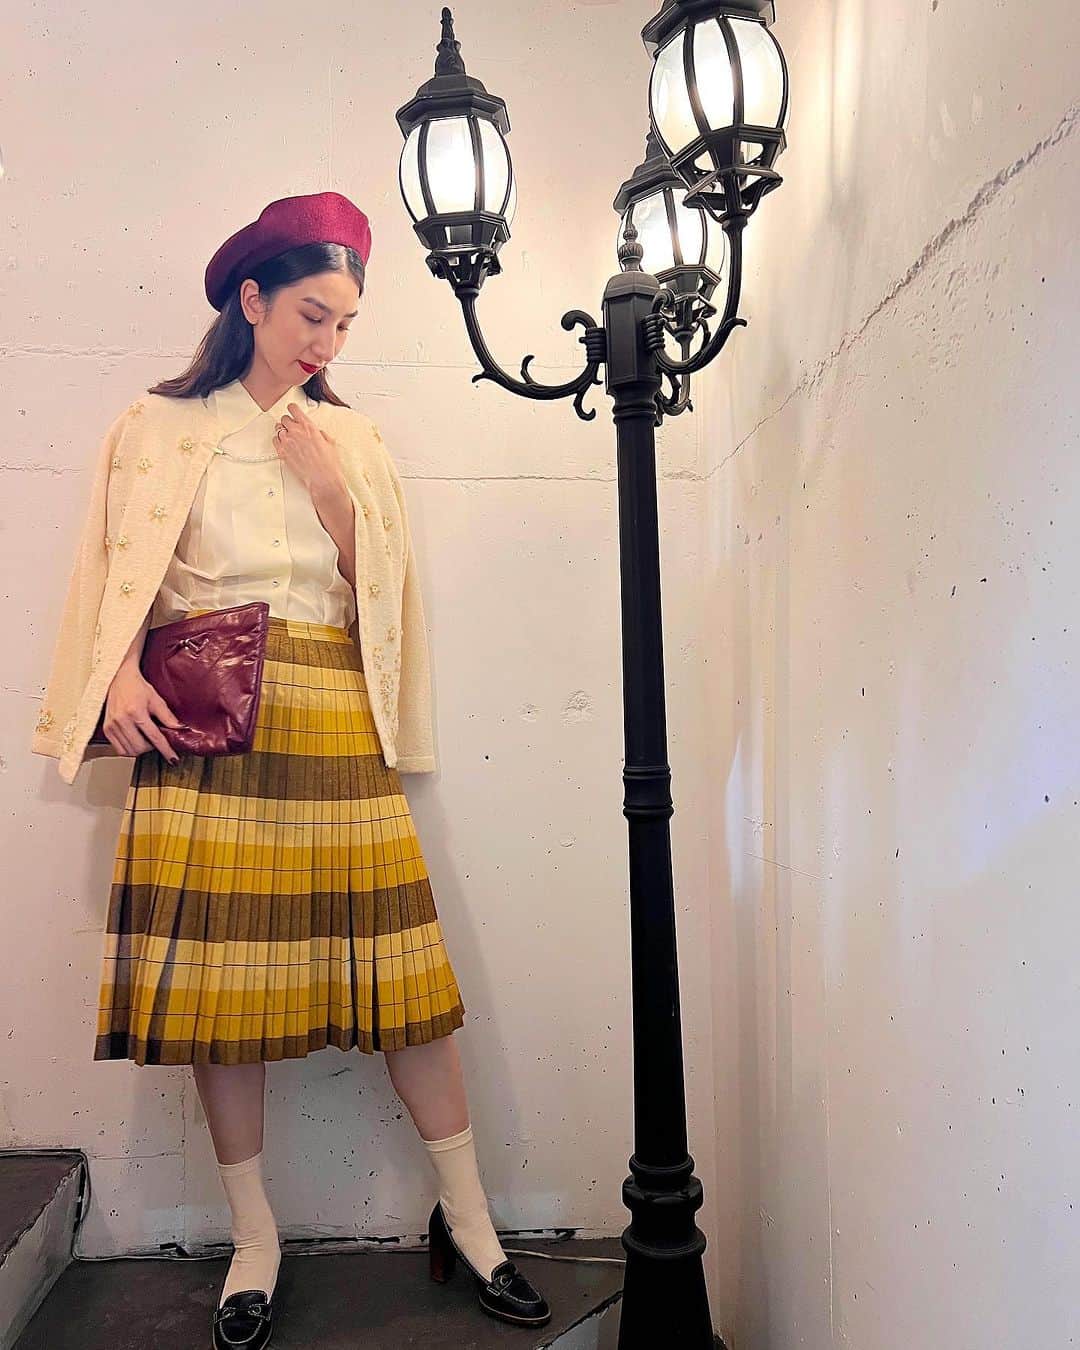 NUTTY Vintage&Collectibleのインスタグラム：「🌝Weekend special🌝堀江本店  ▫︎50s "PENDLETON" pleats skirt：new! ▫︎50s/60s beads embroidery cardigan : new! ▫︎woolen beret ▫︎cluch bag  上質で重量感のあるウールが特徴のアメリカの老舗ブランドPENDLETNONのヴィンテージプリーツスカートをメインに2つのコーディネートをご紹介。  BROWN×MUSTARDのチェックがあたたかみのあるたっぷりプリーツのこちらのスカートはなんとリバーシブル。　　  同じ配色でありながらプリーツの重なりが反転する事で印象がガラリと変わる優れもの。  もちろんファスナーも裾始末もリバーシブル仕様です。  芸術の秋。週末は肩にサッとカーディガンを羽織って美術館へ🎨  styling sally  ┈┈┈┈┈┈┈┈┈┈┈┈┈┈┈┈┈ 【NUTTY通販について】 ⚫︎SNS掲載商品は通販可能です。お気軽にDMにてお問い合わせ下さい。 ⚫︎＜ONLINE STORE＞http://nutty.theshop.jp/ （プロフィールページURLよりアクセス出来ます） ┈┈┈┈┈┈┈┈┈┈┈┈┈┈┈┈┈  #nuttyvintage#vintage #vintagefashion#南堀江#古着#1940s#1950s#1960s#1970s #1980s #80s #ヴィンテージ#1940sfashion#1940sstyle #1960sfashion#1960sblouse #vintagePaisley #vintagebamboobag#costumejewelry#collectivejewelry#earlyplastic#vintagehat#ootd #vintageootd #vintagecardigan #vintagesweater #pendleton」